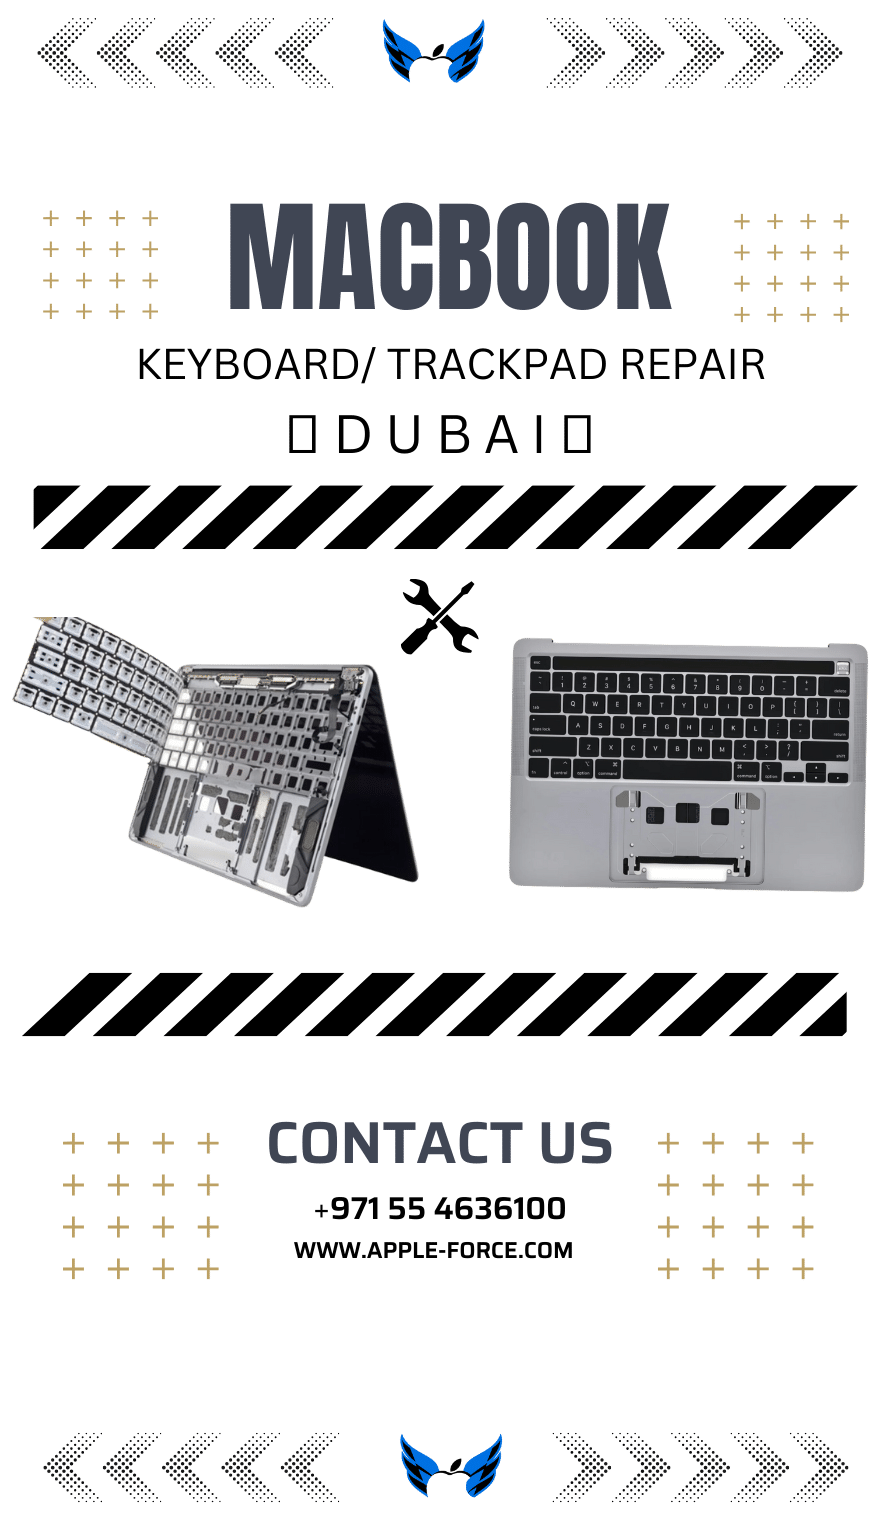 MacBook KeyBoard Repair / Trackpad Repair AppleForce UAE